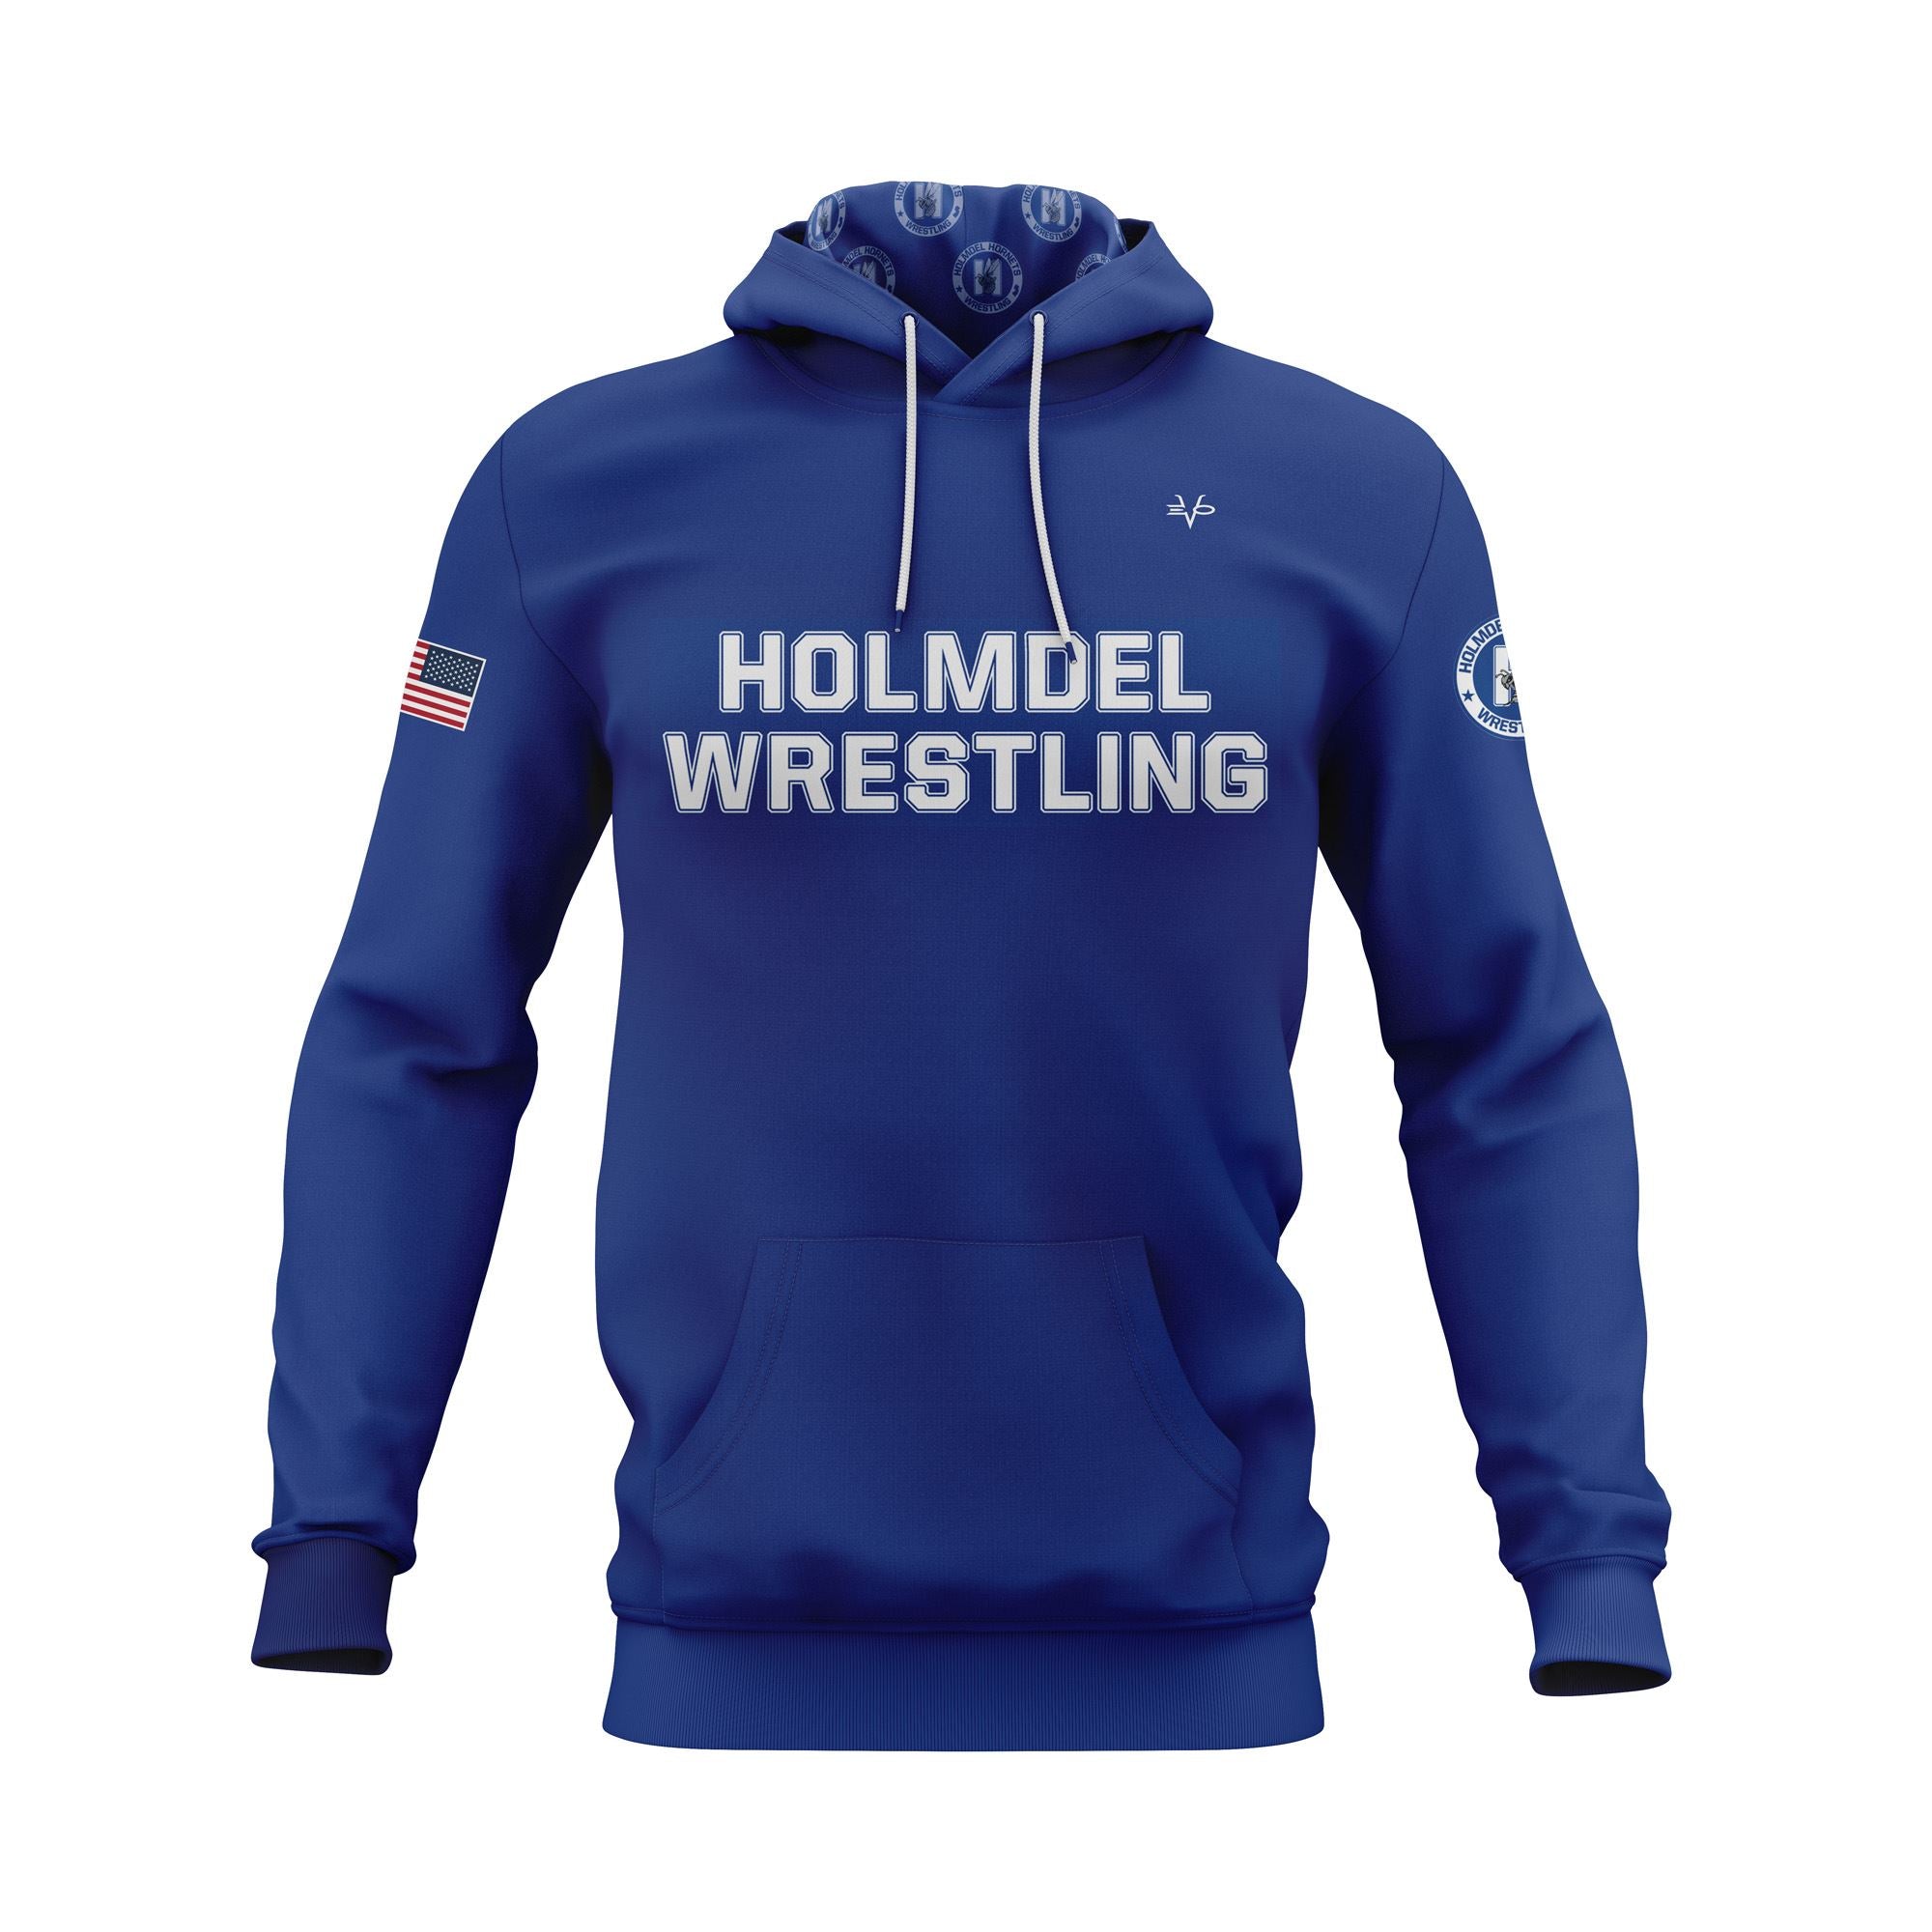 HOLMDEL WRESTLING Sublimated Blue Hoodie